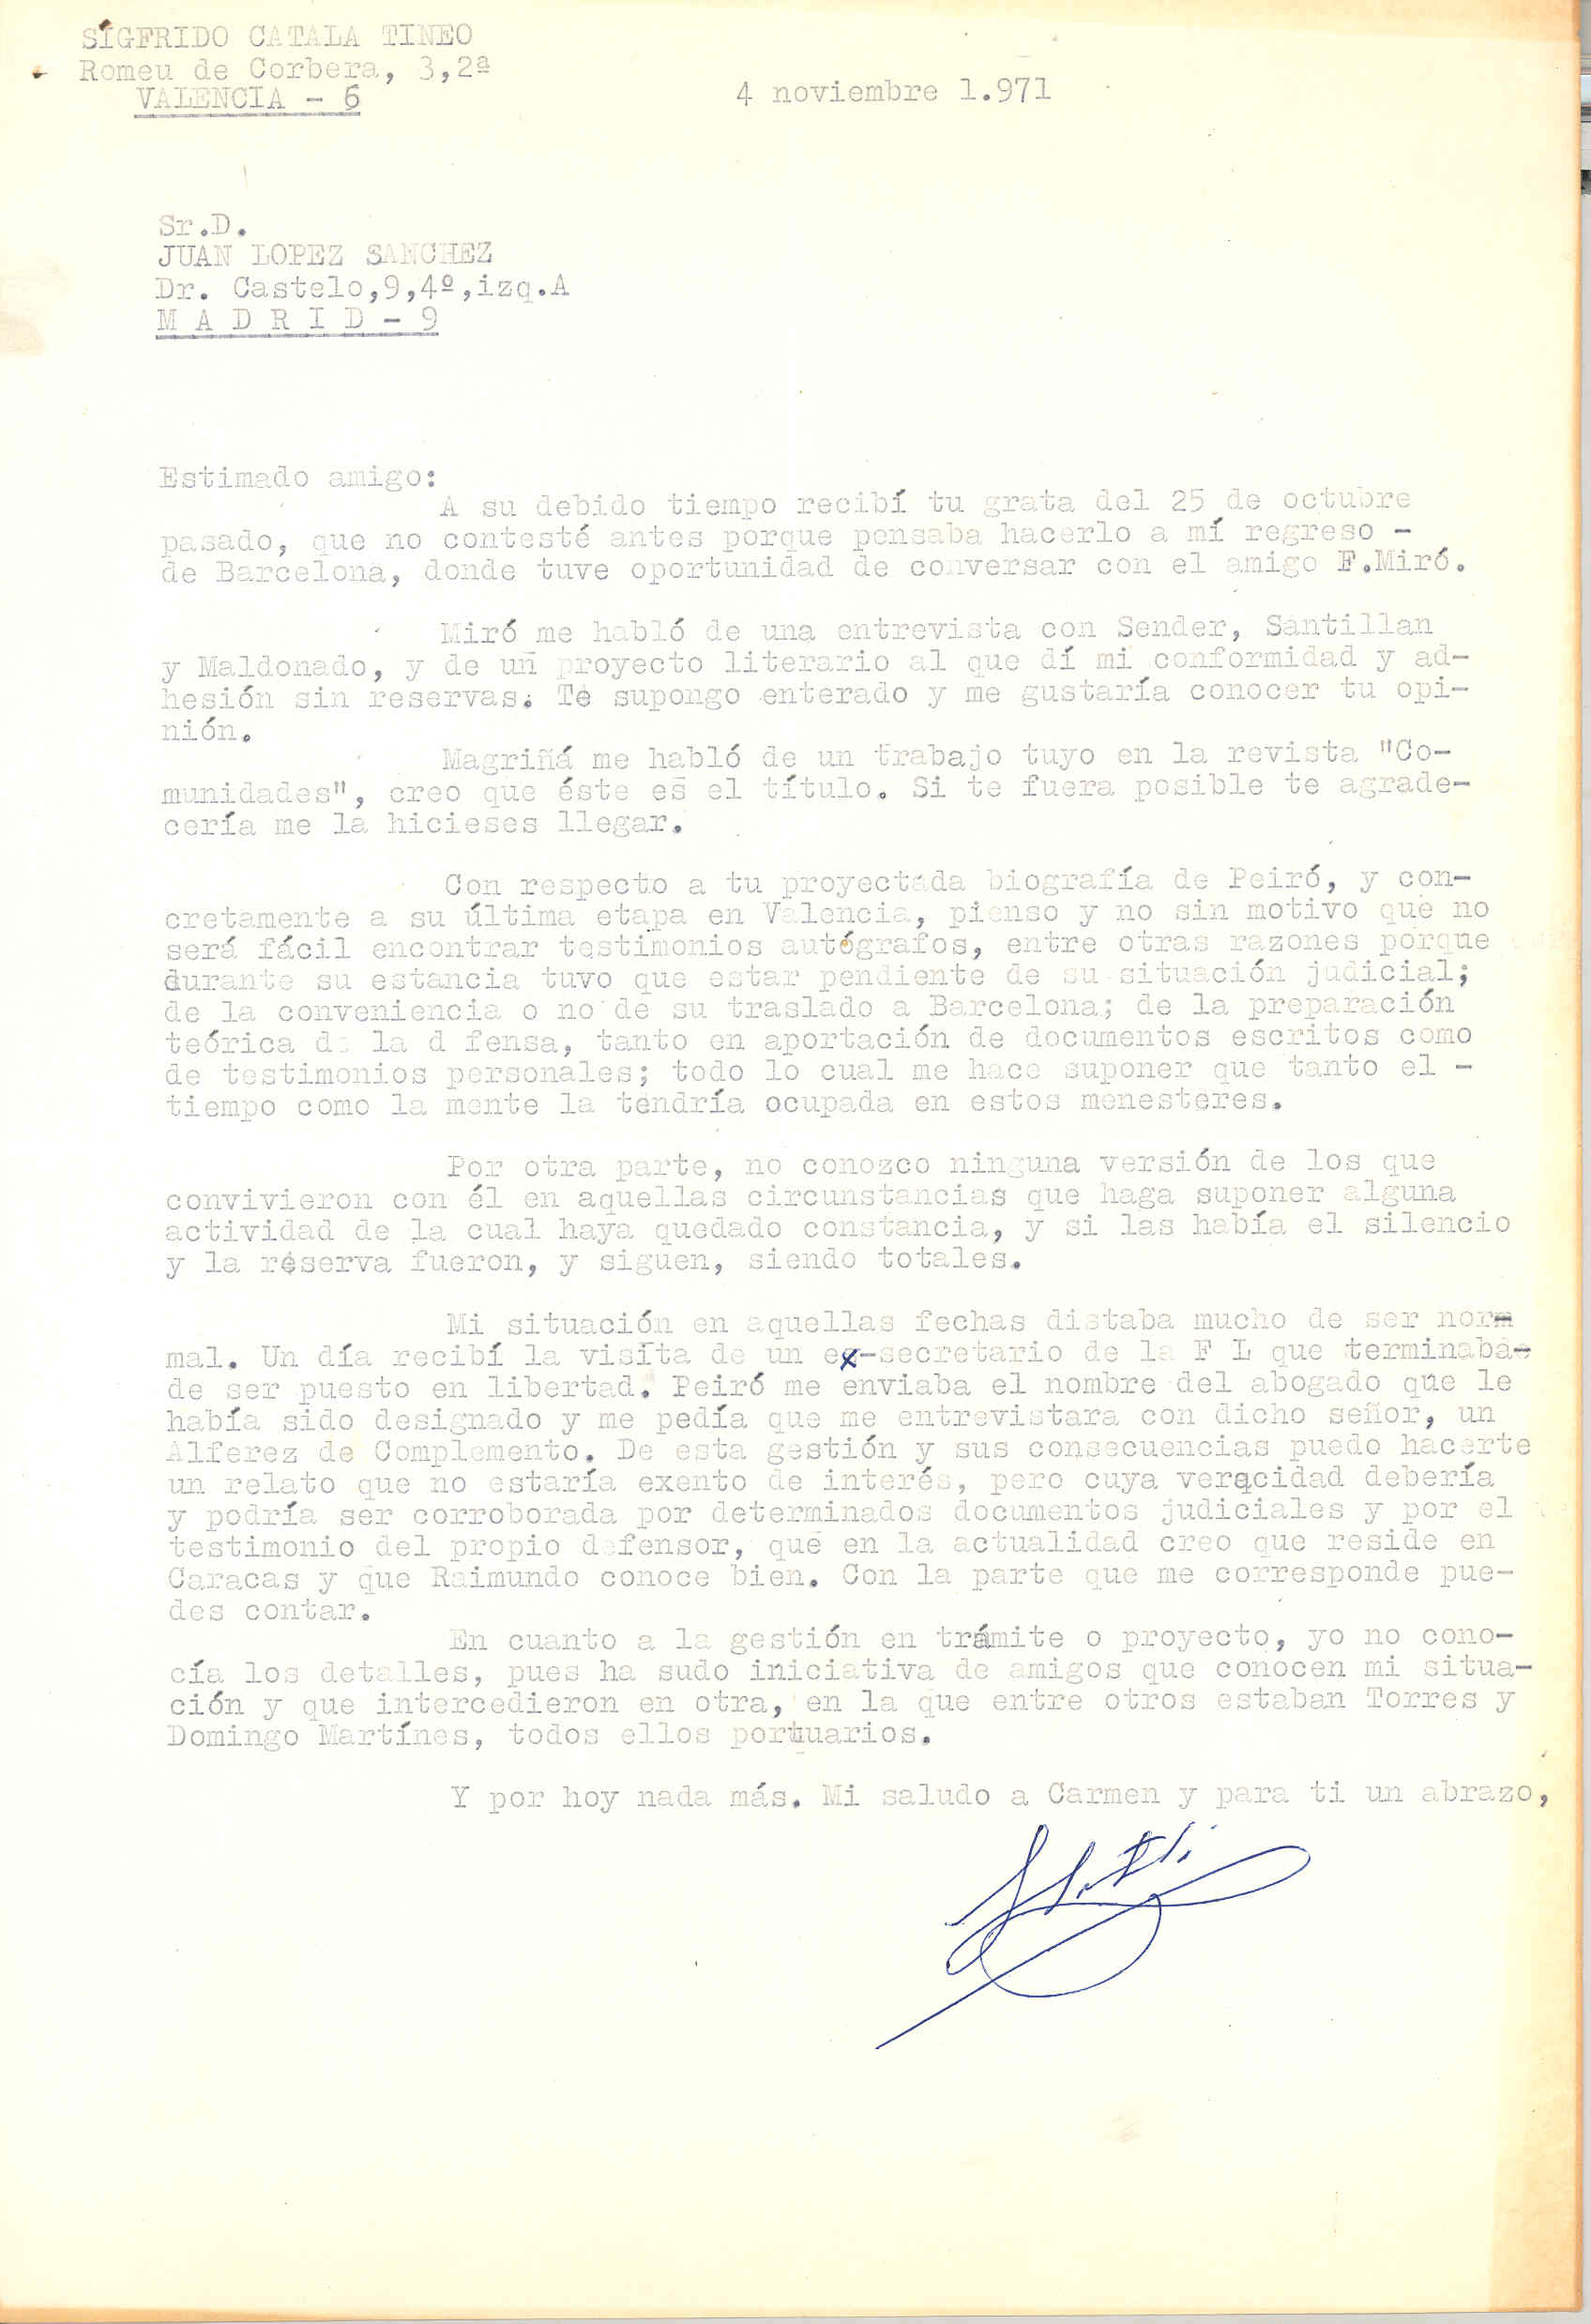 Carta de Sigfrido Catalá en la que habla de su colaboración en la biografía de Peiró. Pide la opinión de una entrevista de Miró con Sender, Santillán y Maldonado.